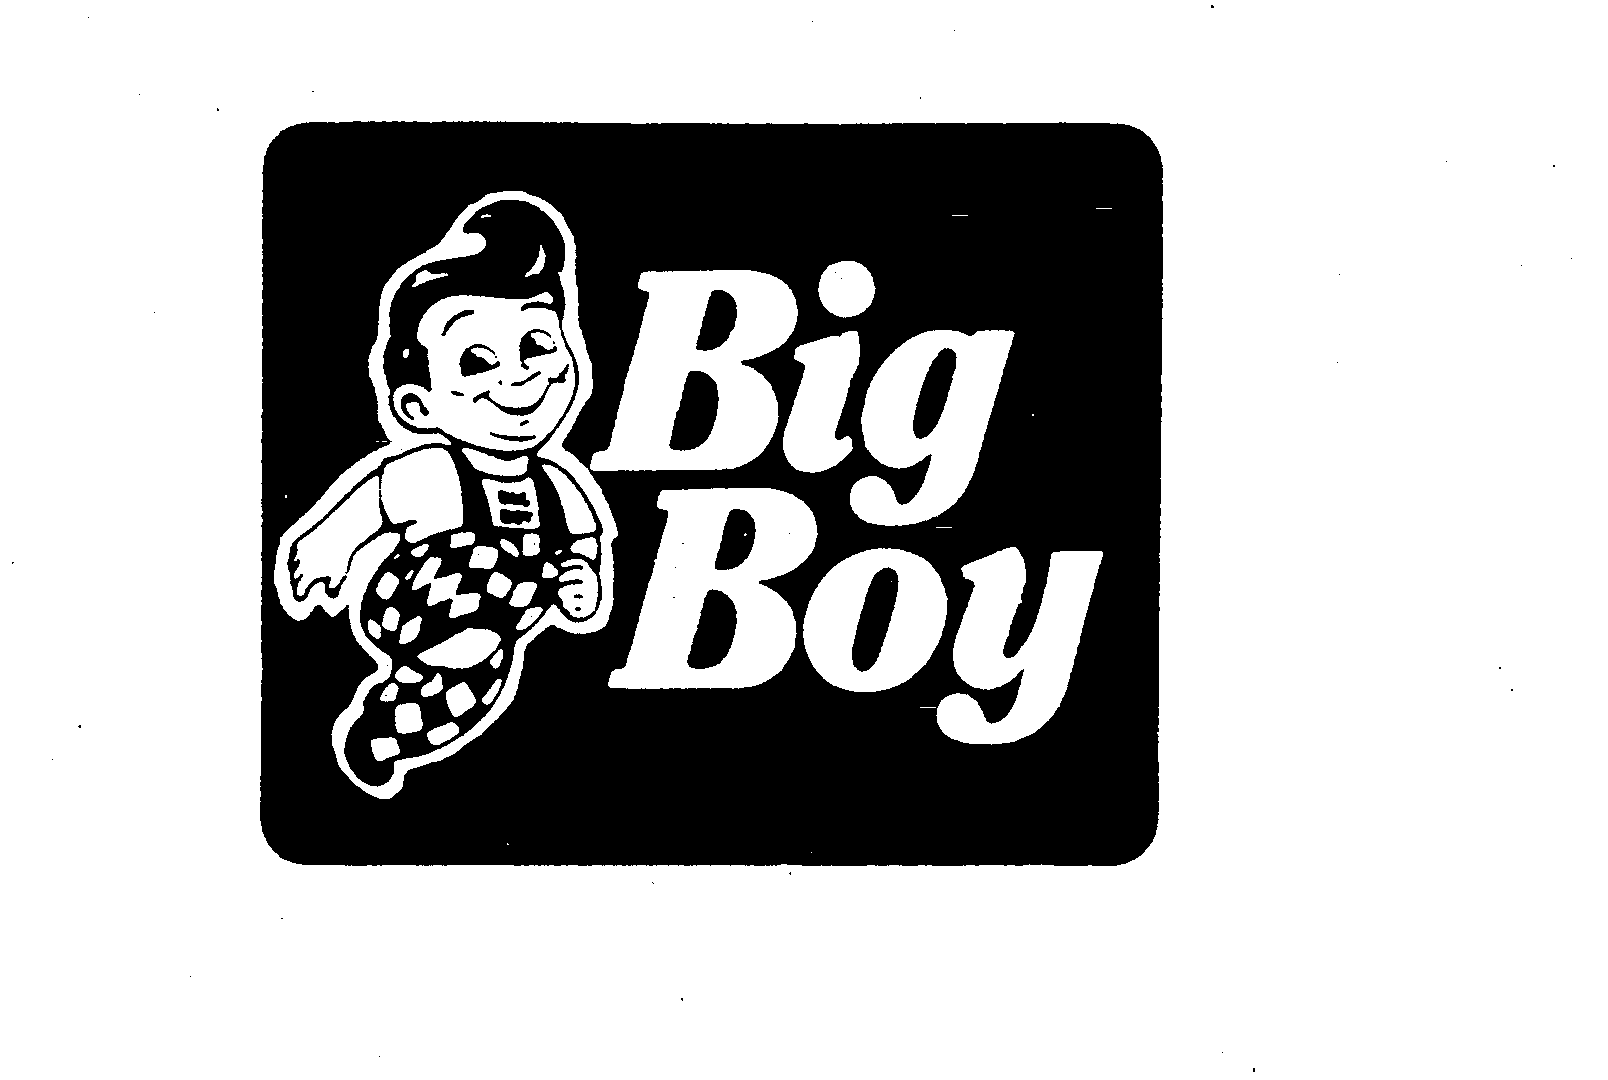 Trademark Logo BIG BOY